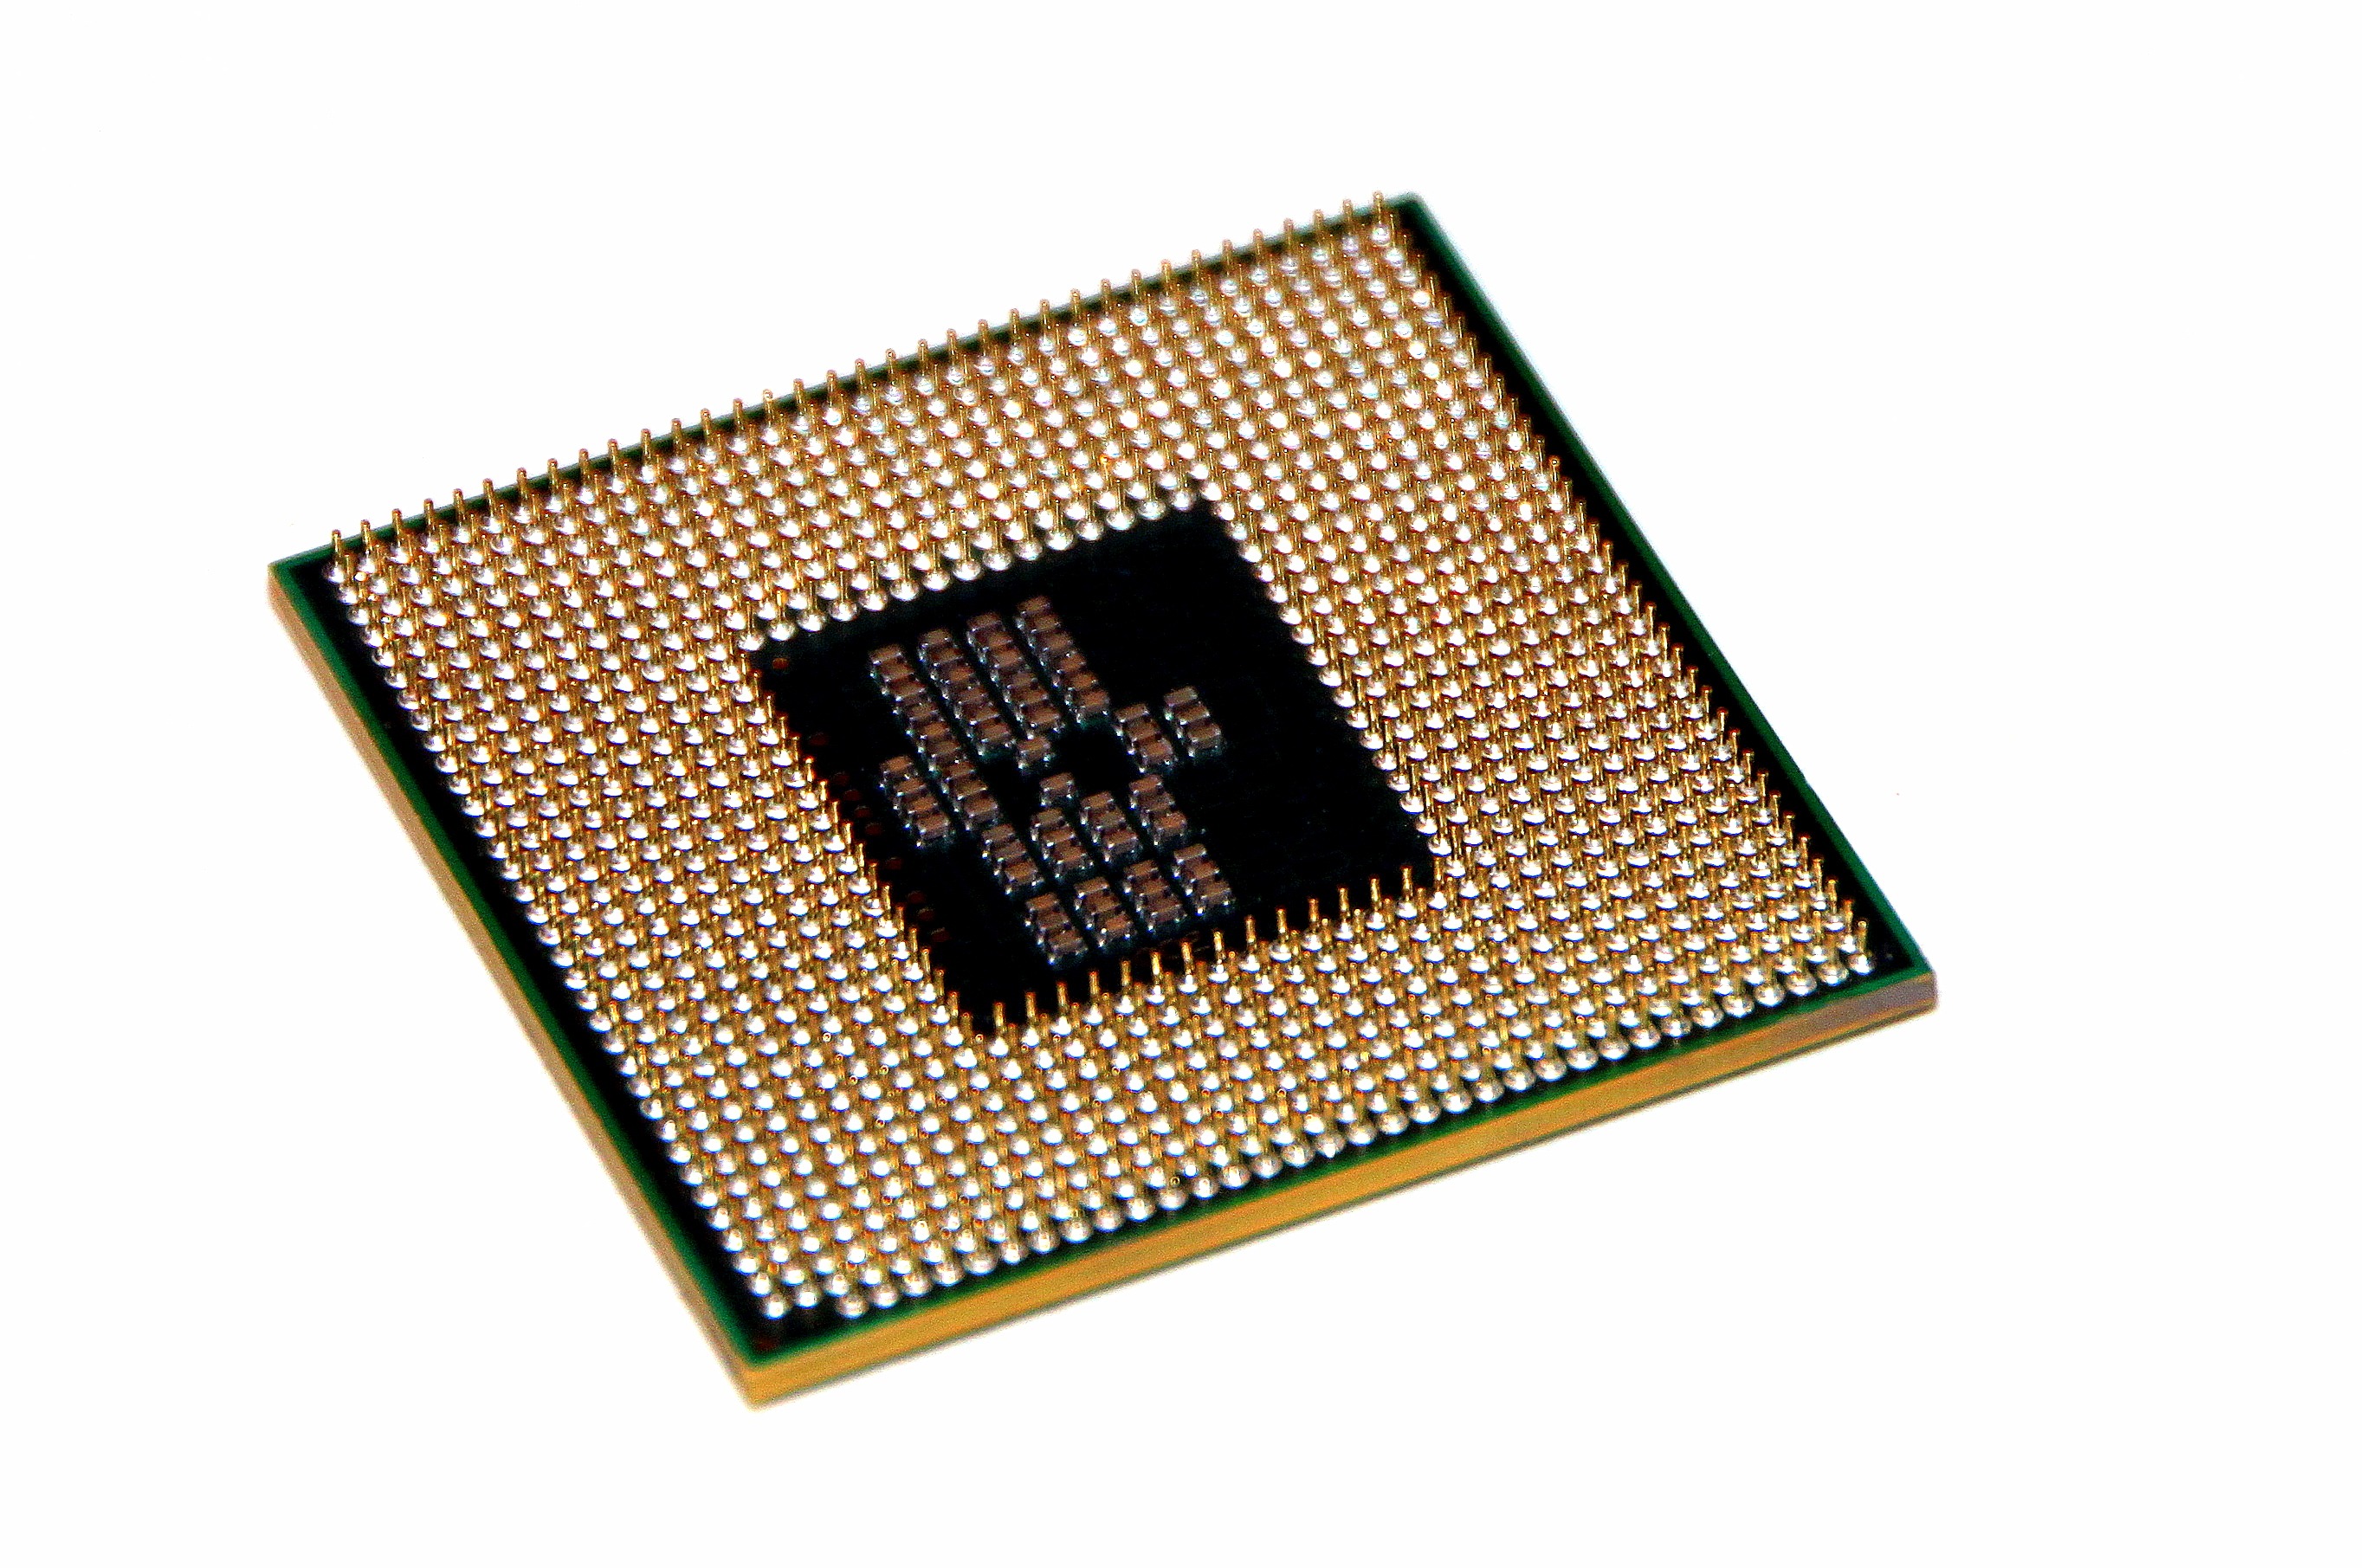 green microprocessor, core i7, cpu, intel, mobile, editorial